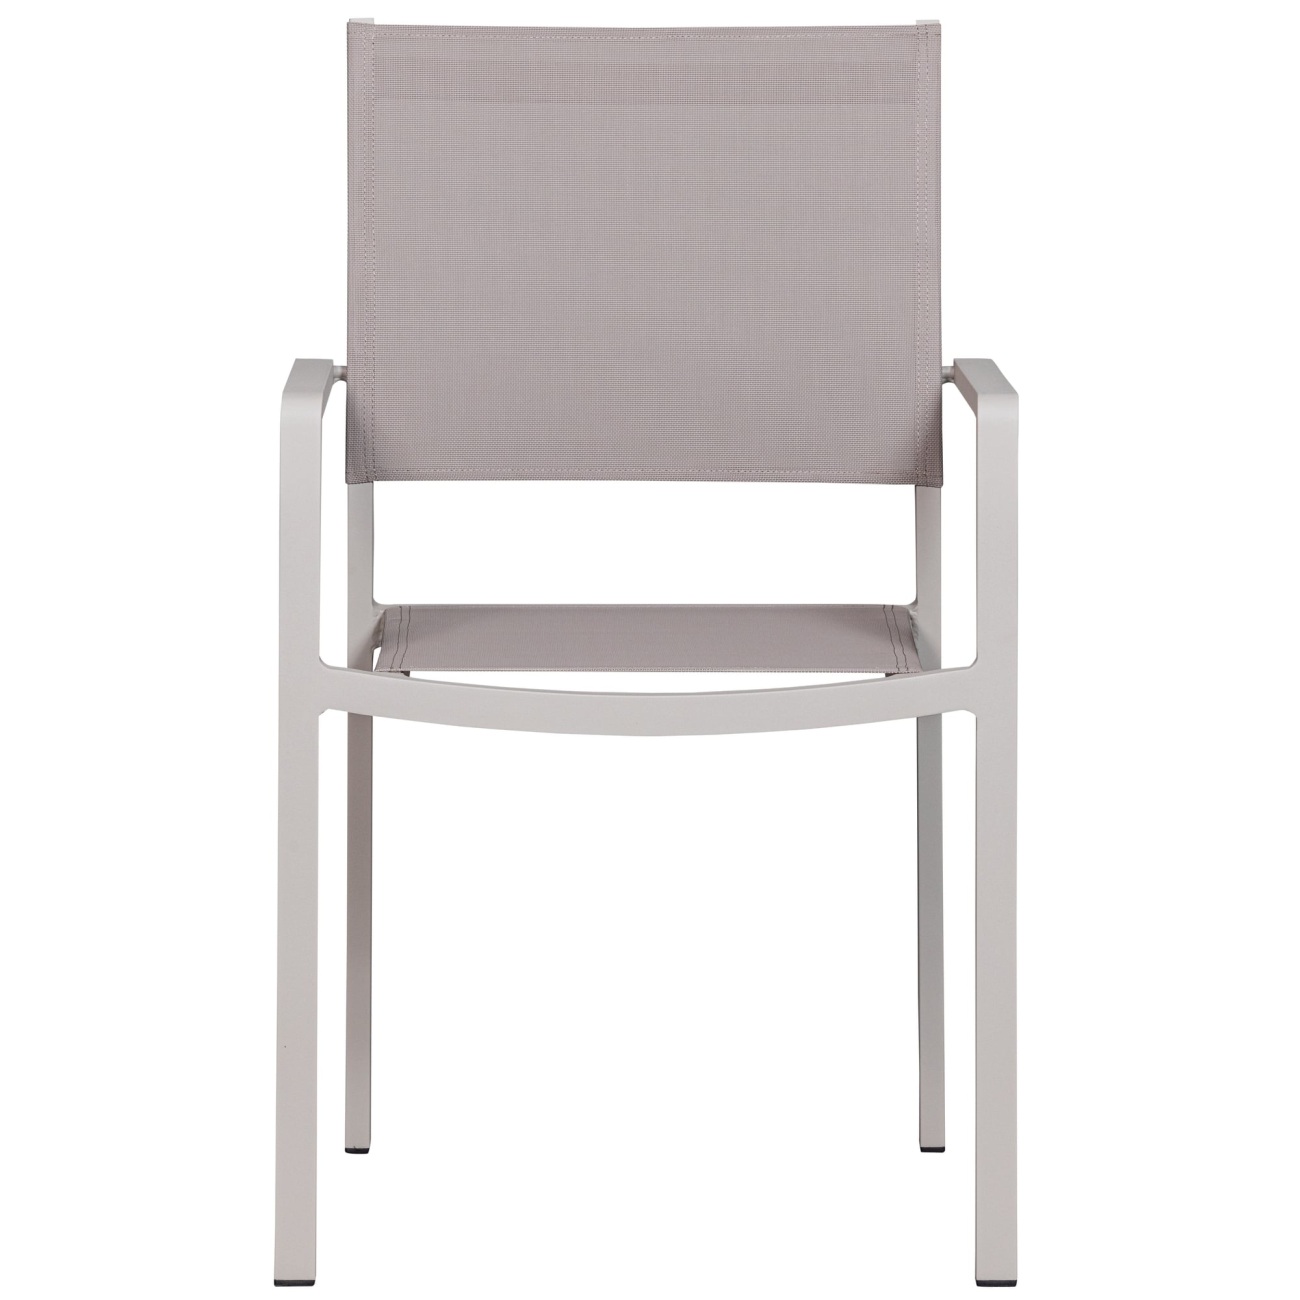 Der Gartenstuhl Fowl überzeugt mit seinem modernen Design. Gefertigt wurde er aus Textilene, welches einen Sand Farbton besitzt. Das Gestell ist aus Aluminium und hat eine Sand Farbe. Der Stuhl besitzt eine Sitzhöhe von 46 cm.